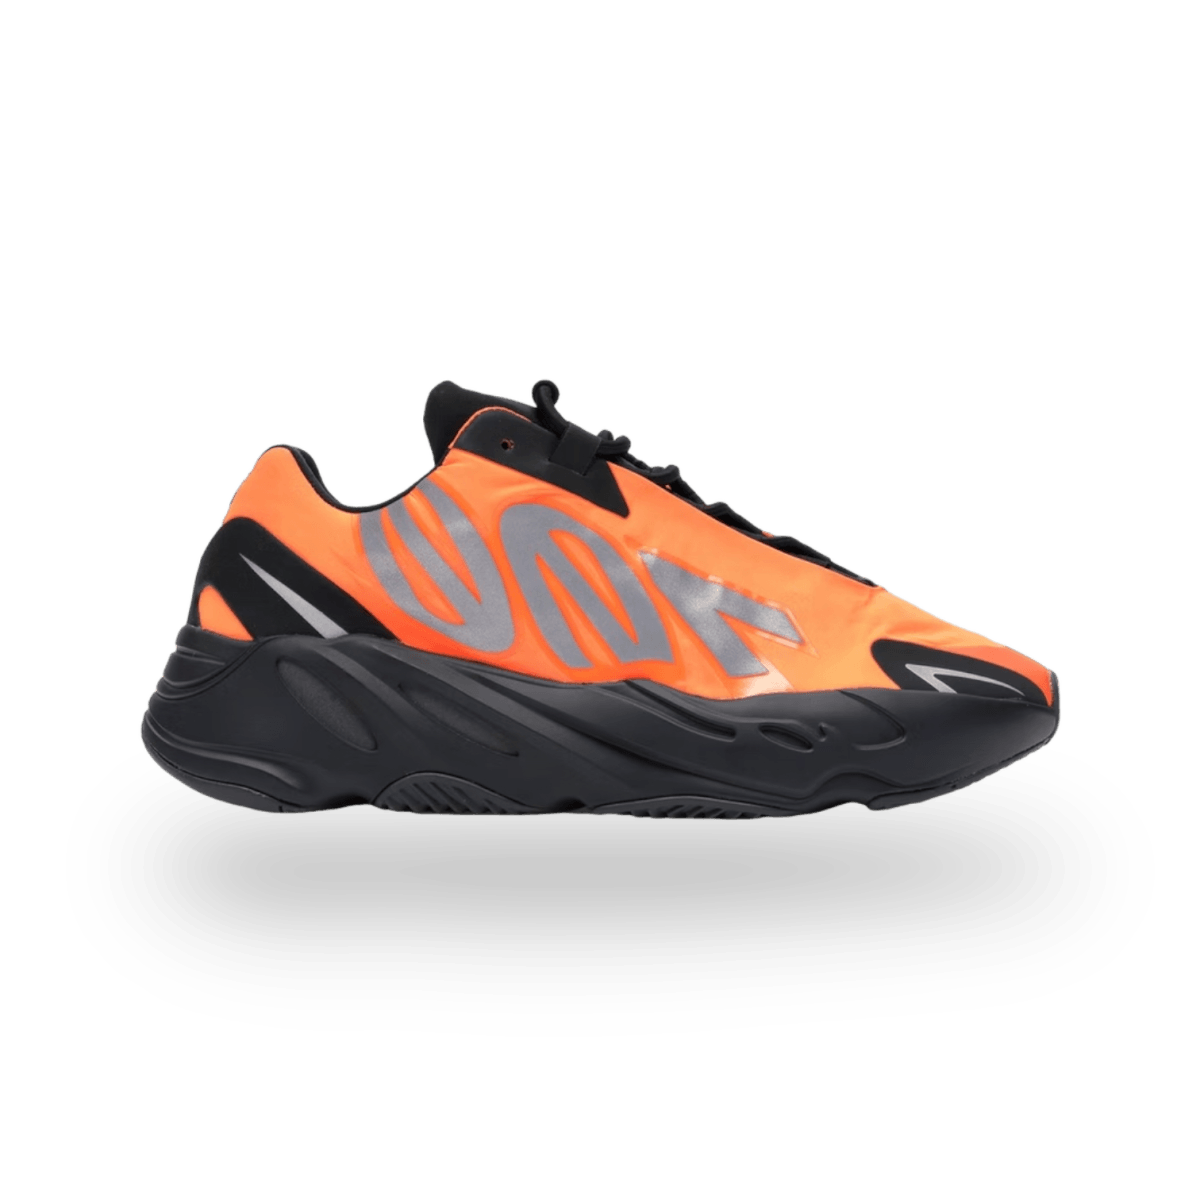 Yeezy Boost 700 MNVN Orange - Low Sneaker - Jawns on Fire Sneakers & Streetwear